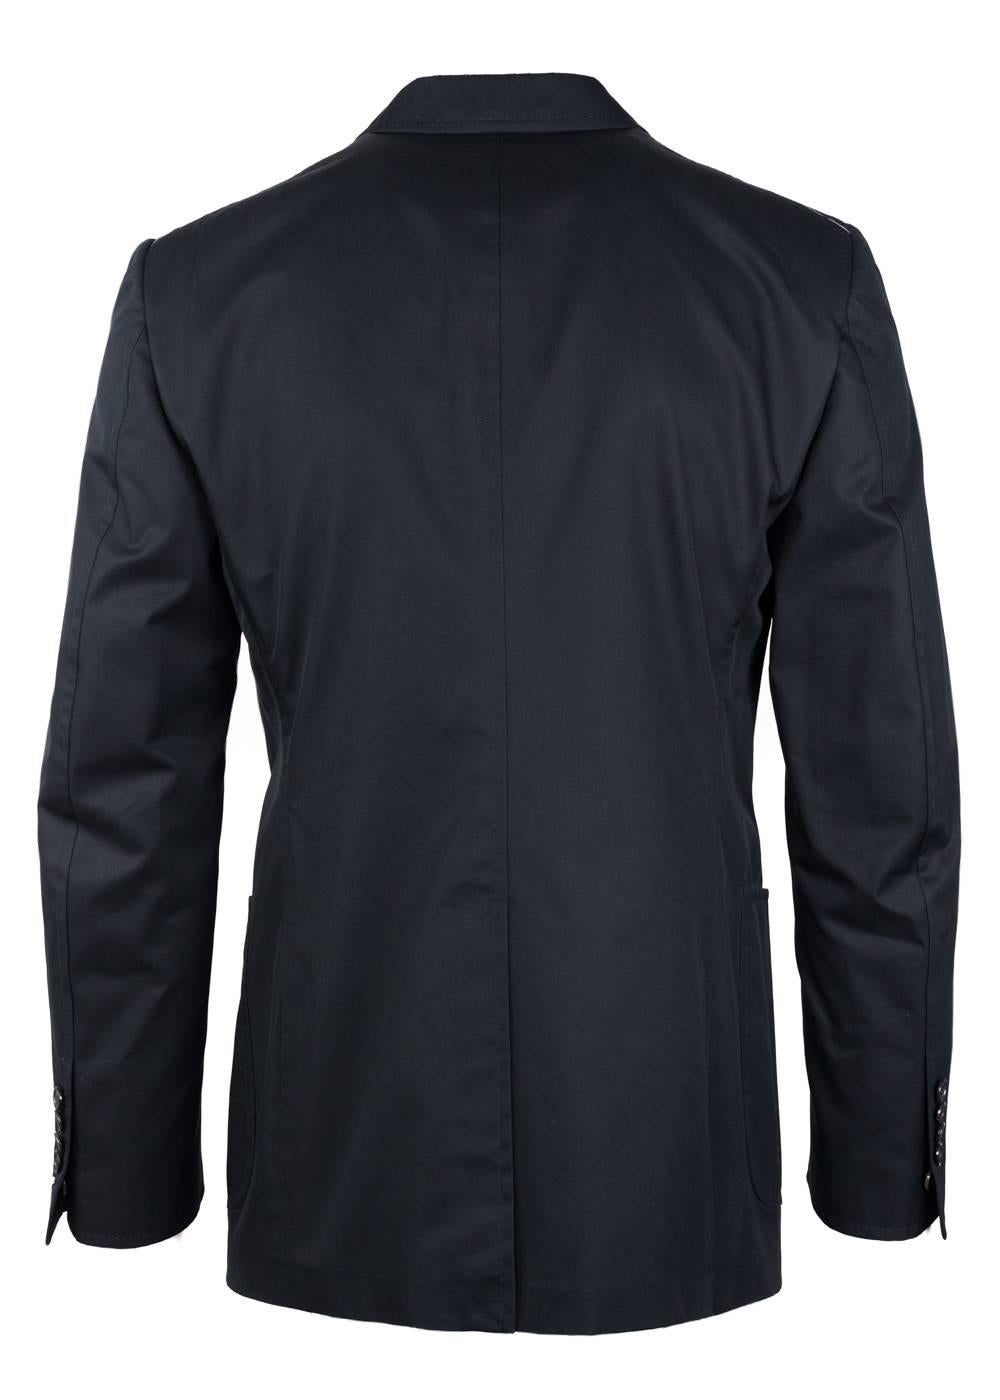 Tom Ford Black 100% Cotton Shelton Sport Jacket  For Sale 1